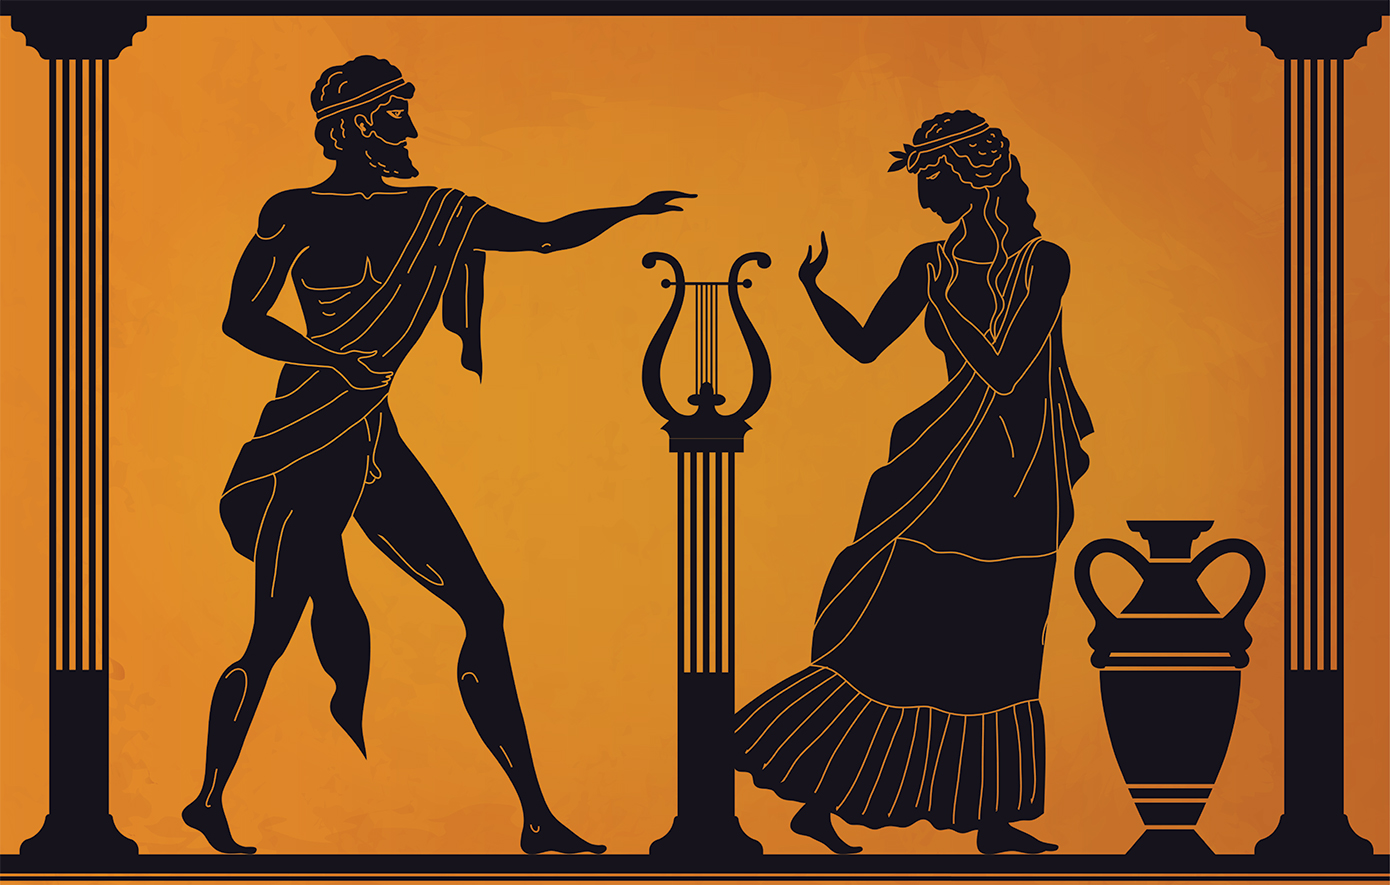 Ο ιδρώτας και η βρωμιά των Ολυμπιονικών ήταν ελιξίριο υγείας για τους αρχαίους Έλληνες και τους Ρωμαίους